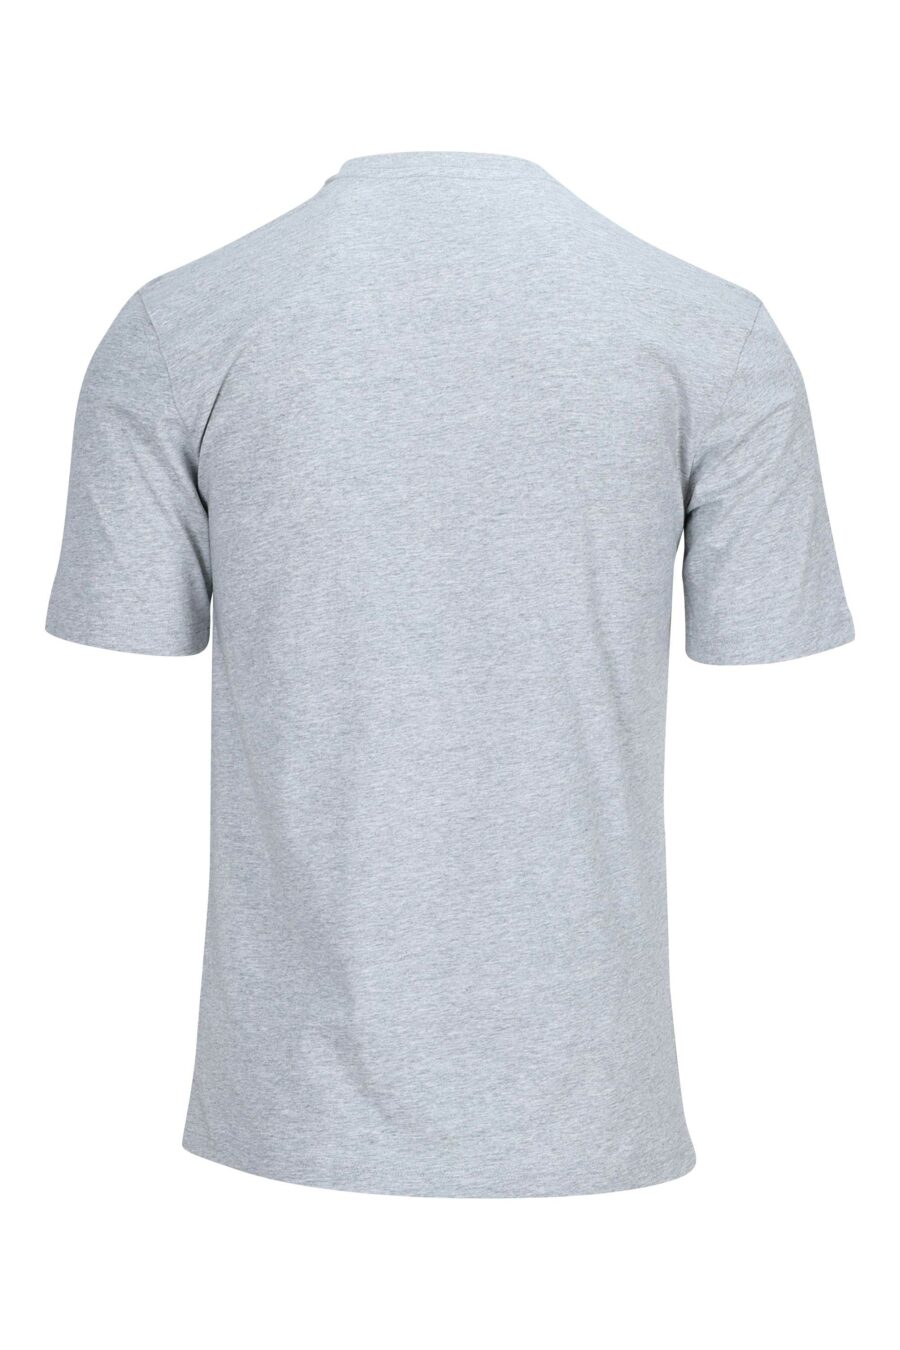 Camiseta gris con maxilogo de cinturón negro - 889316938029 1